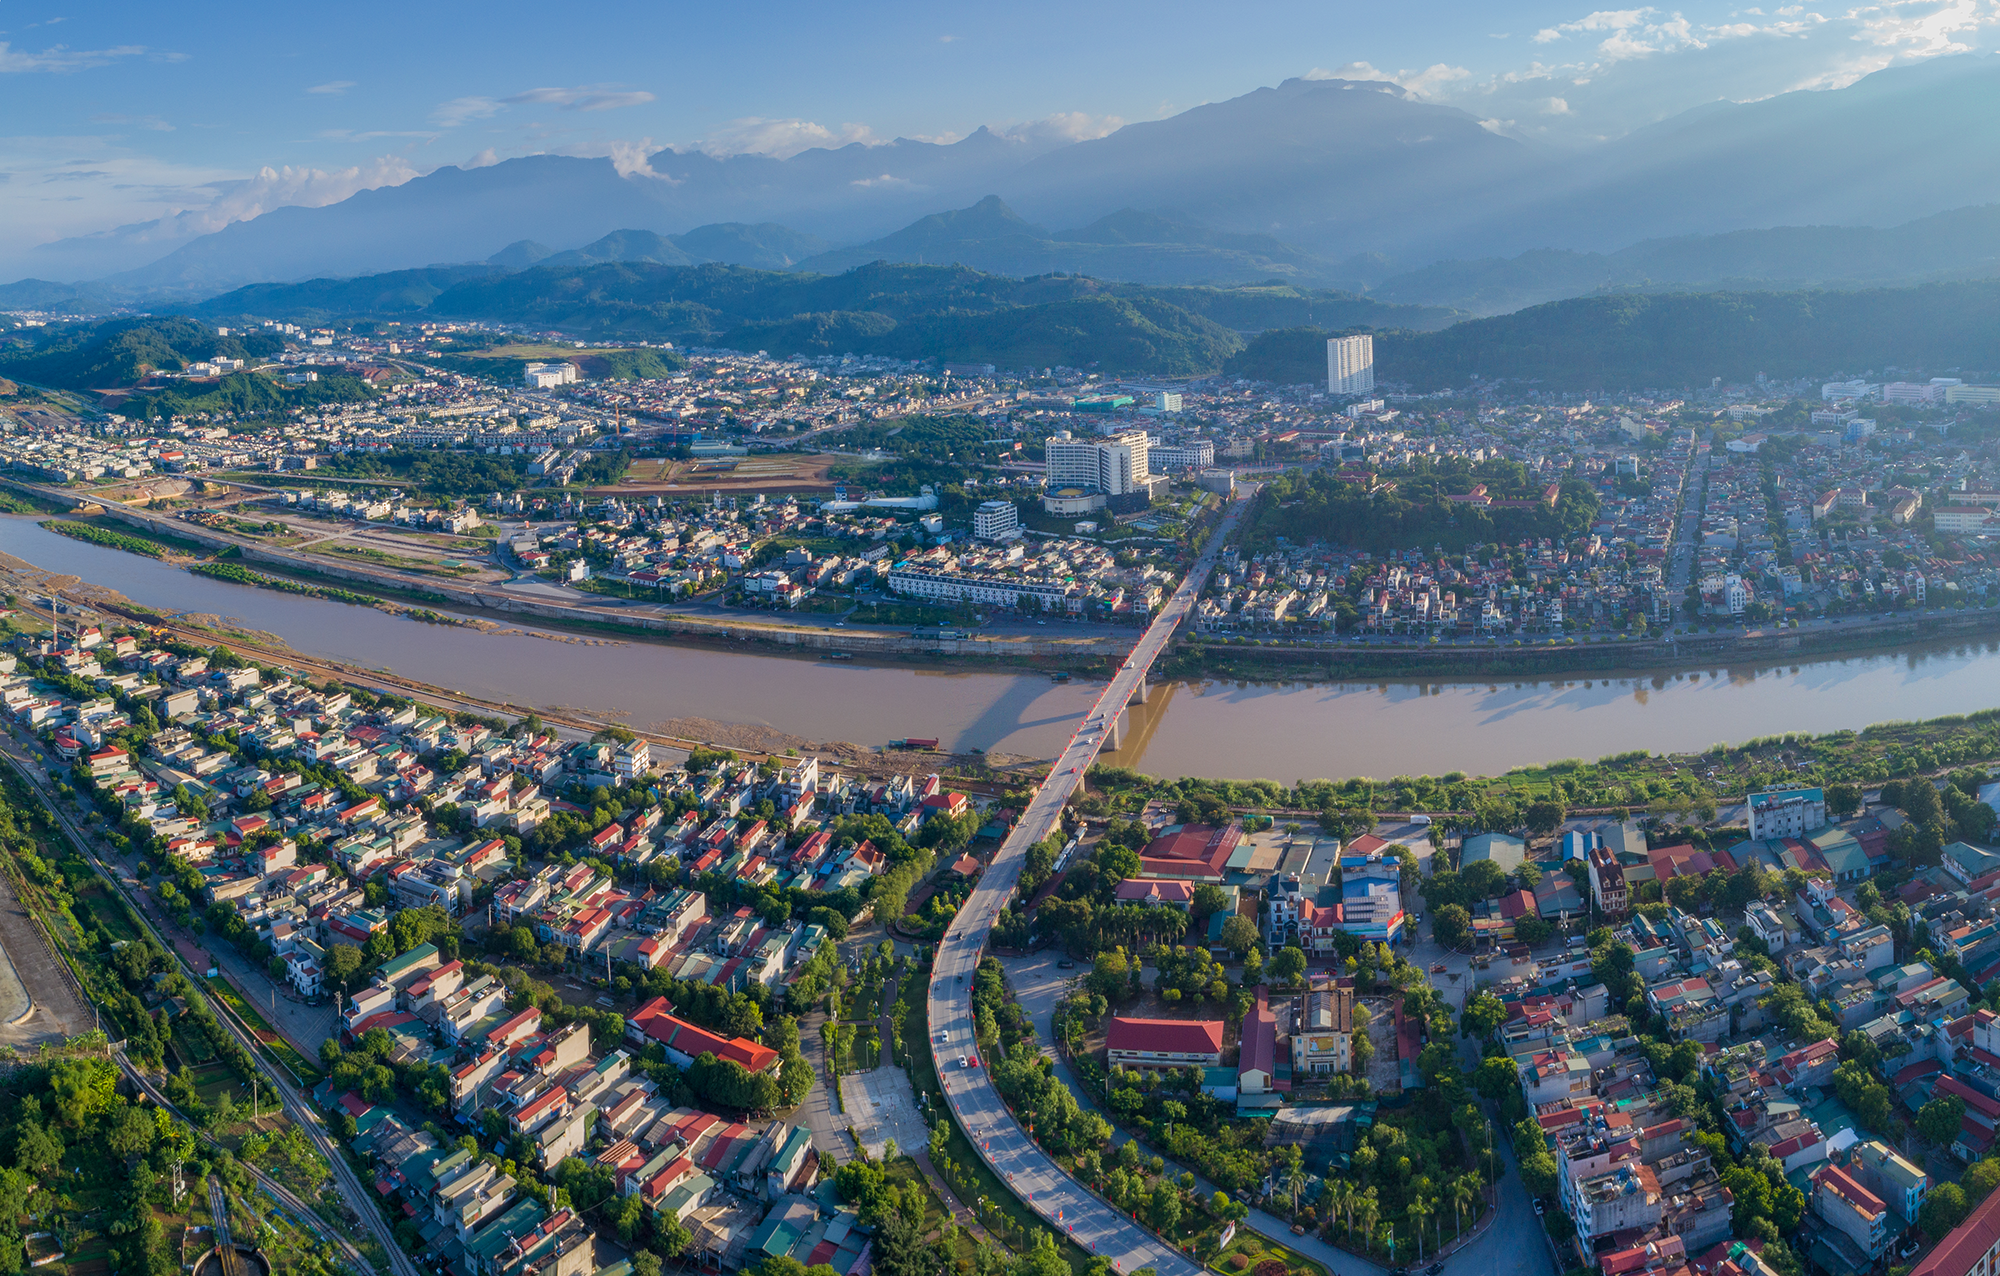 Quy hoạch tỉnh Lào Cai: Mở rộng không gian phát triển, phấn đấu trở thành cực tăng trưởng, trung tâm kết nối giao thương 